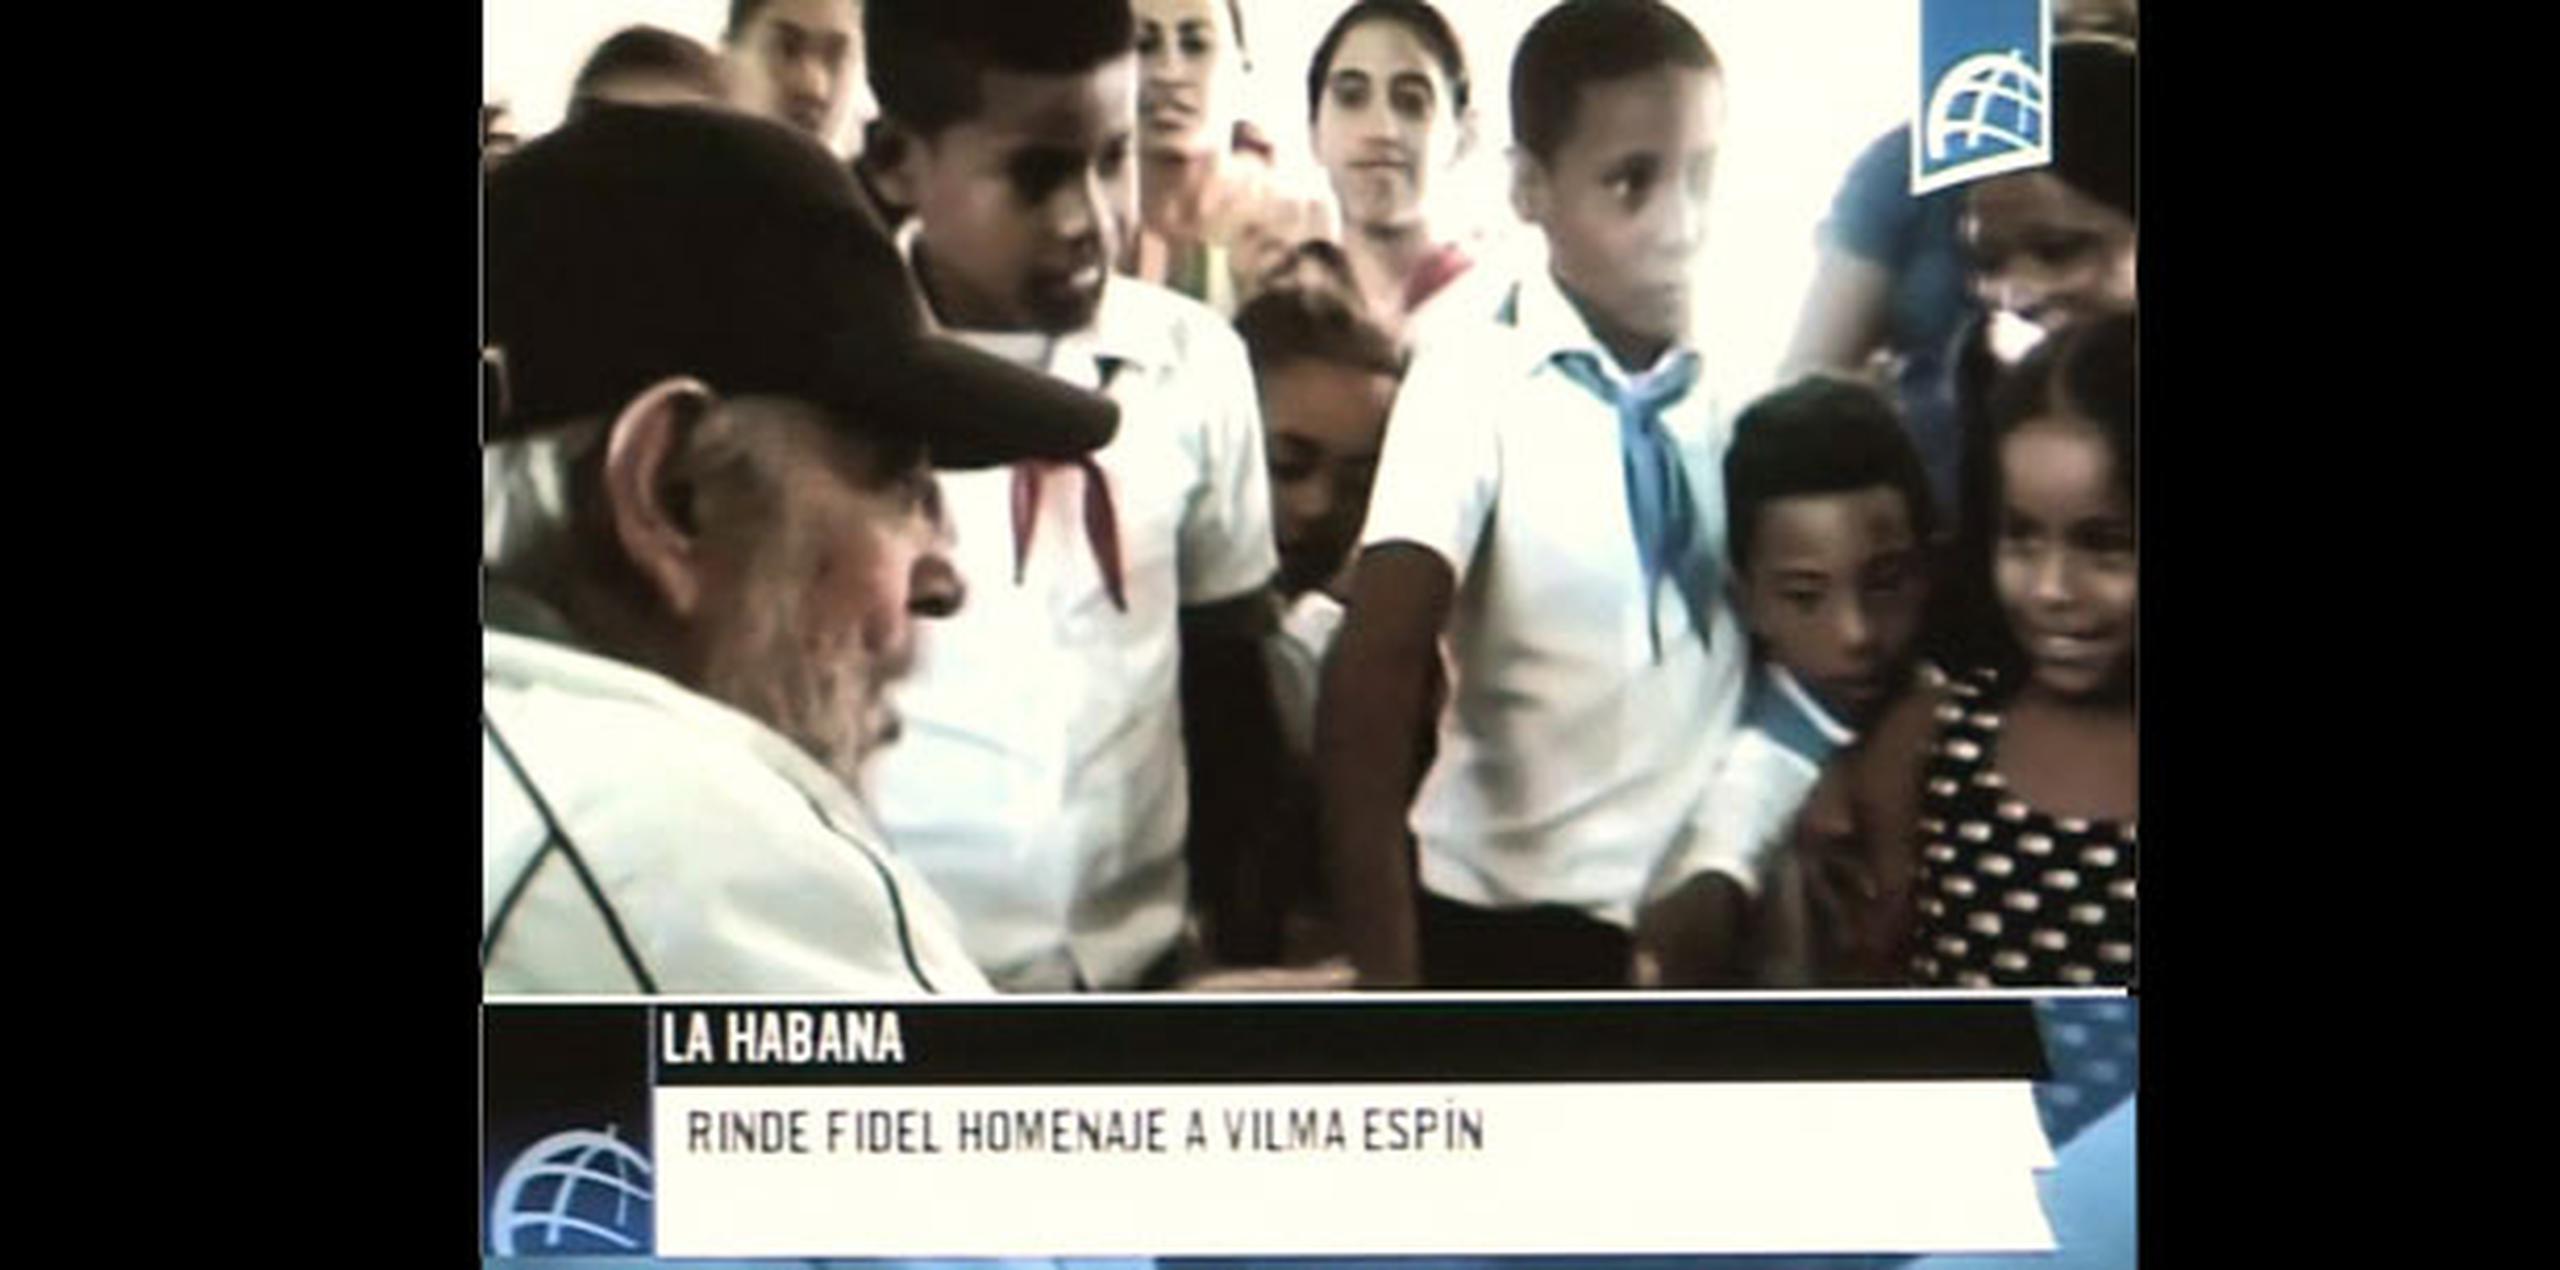 Imagen tomada de la Televisión cubana en la que aparece Fidel Castro en una escuela de niños durante un homenaje a la fallecida dirigente Vilma Espín. (Agencia EFE)